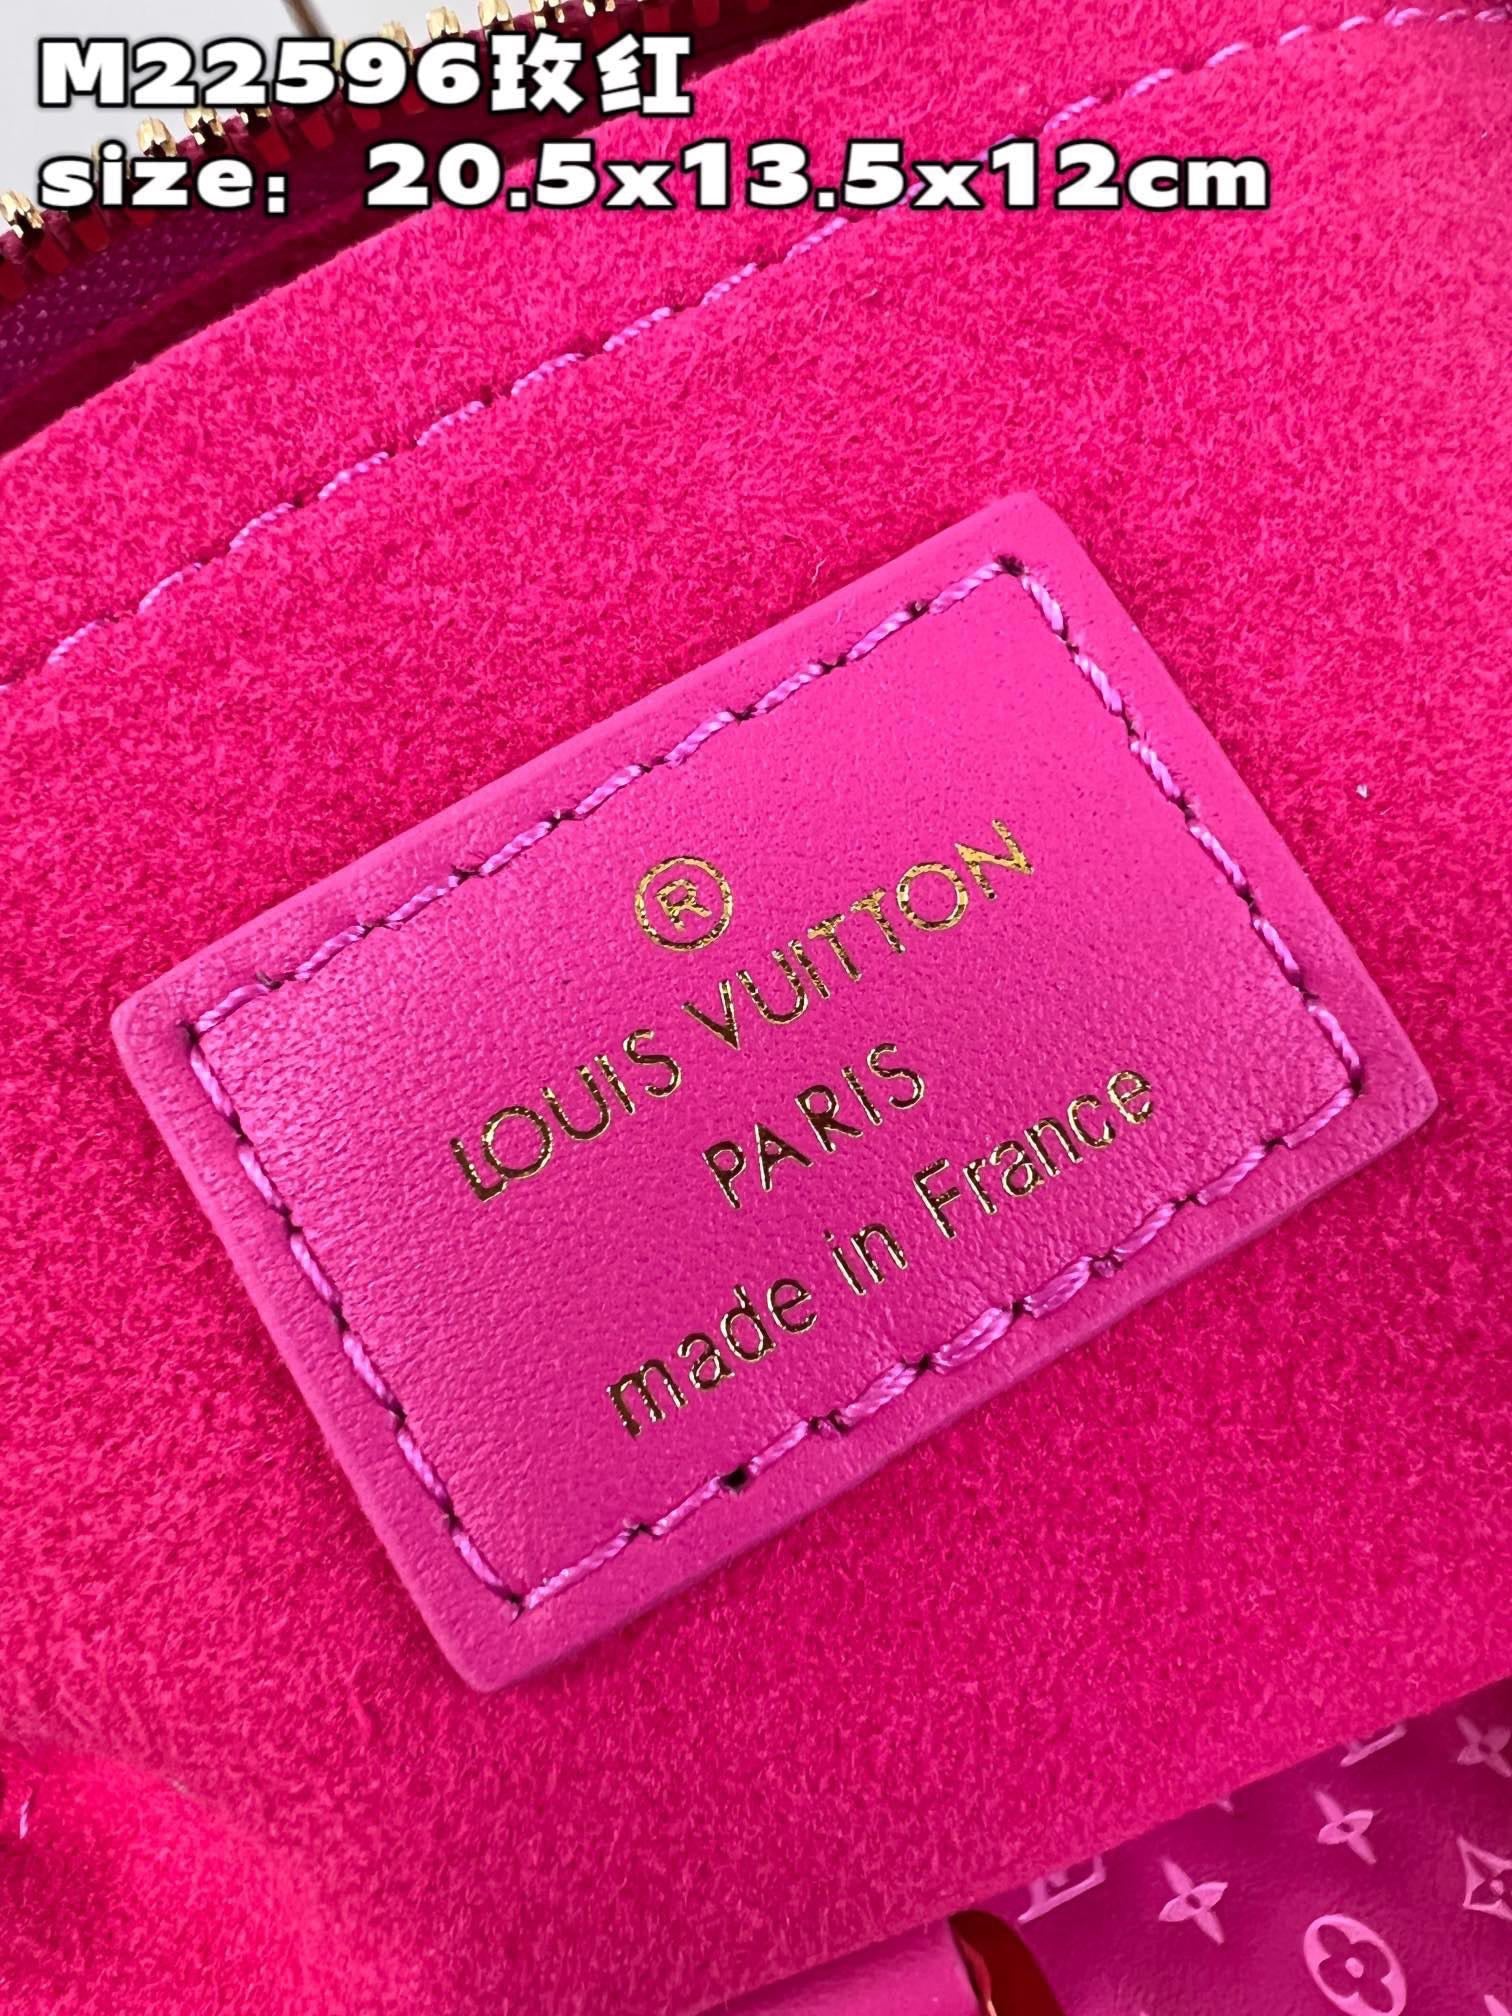 Louis Vuitton Speedy Bandouliere 20 Pink